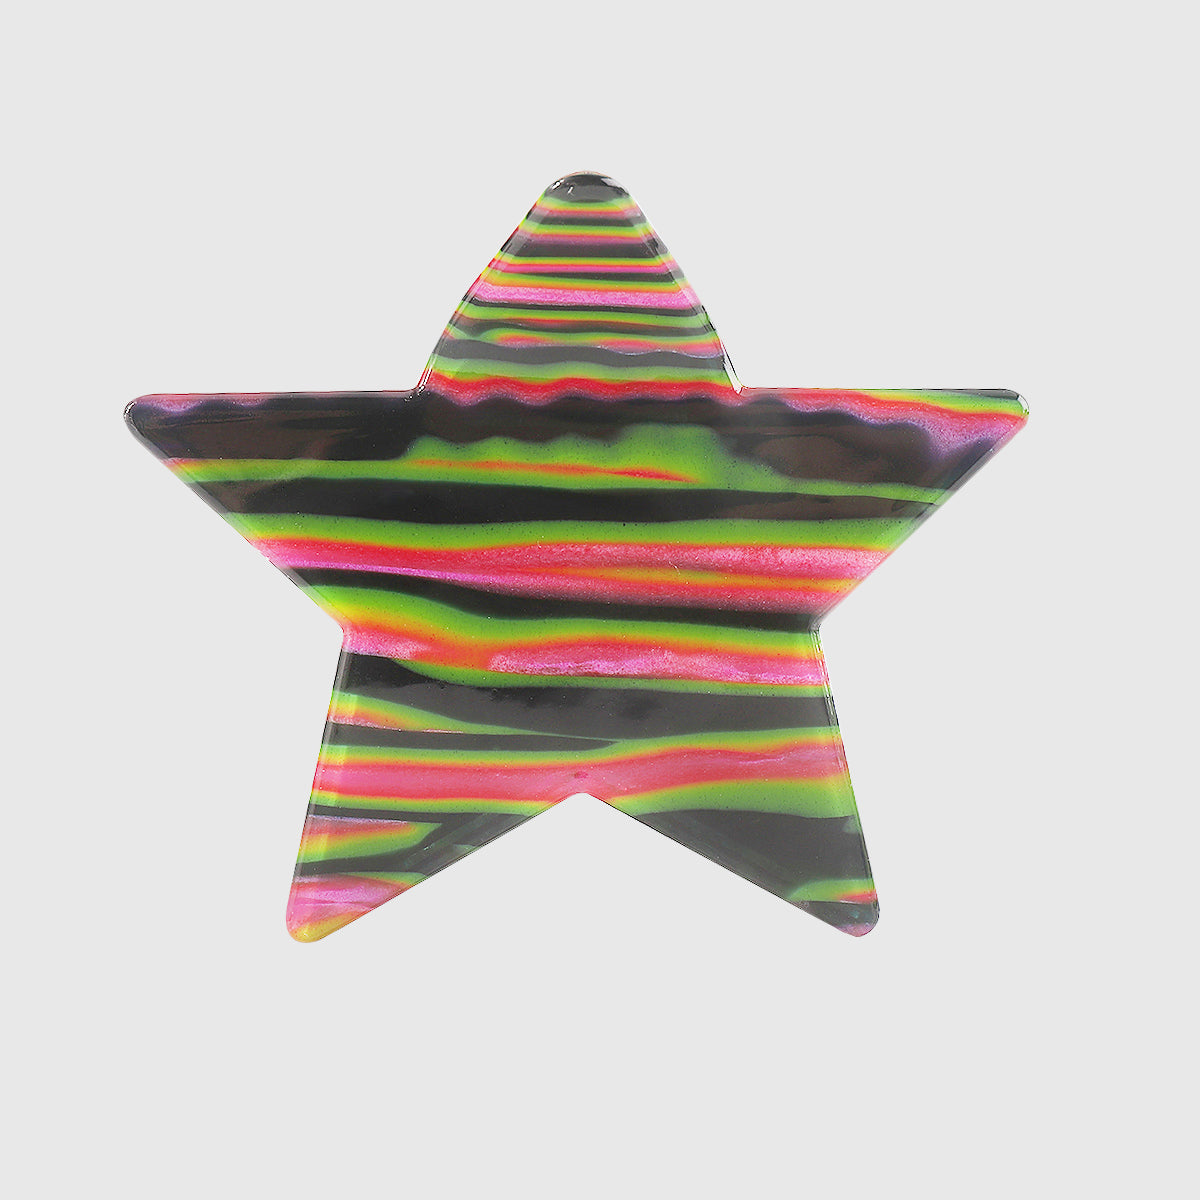 F5956 Larg Shiny Acrylic Star Hair Claw Clips